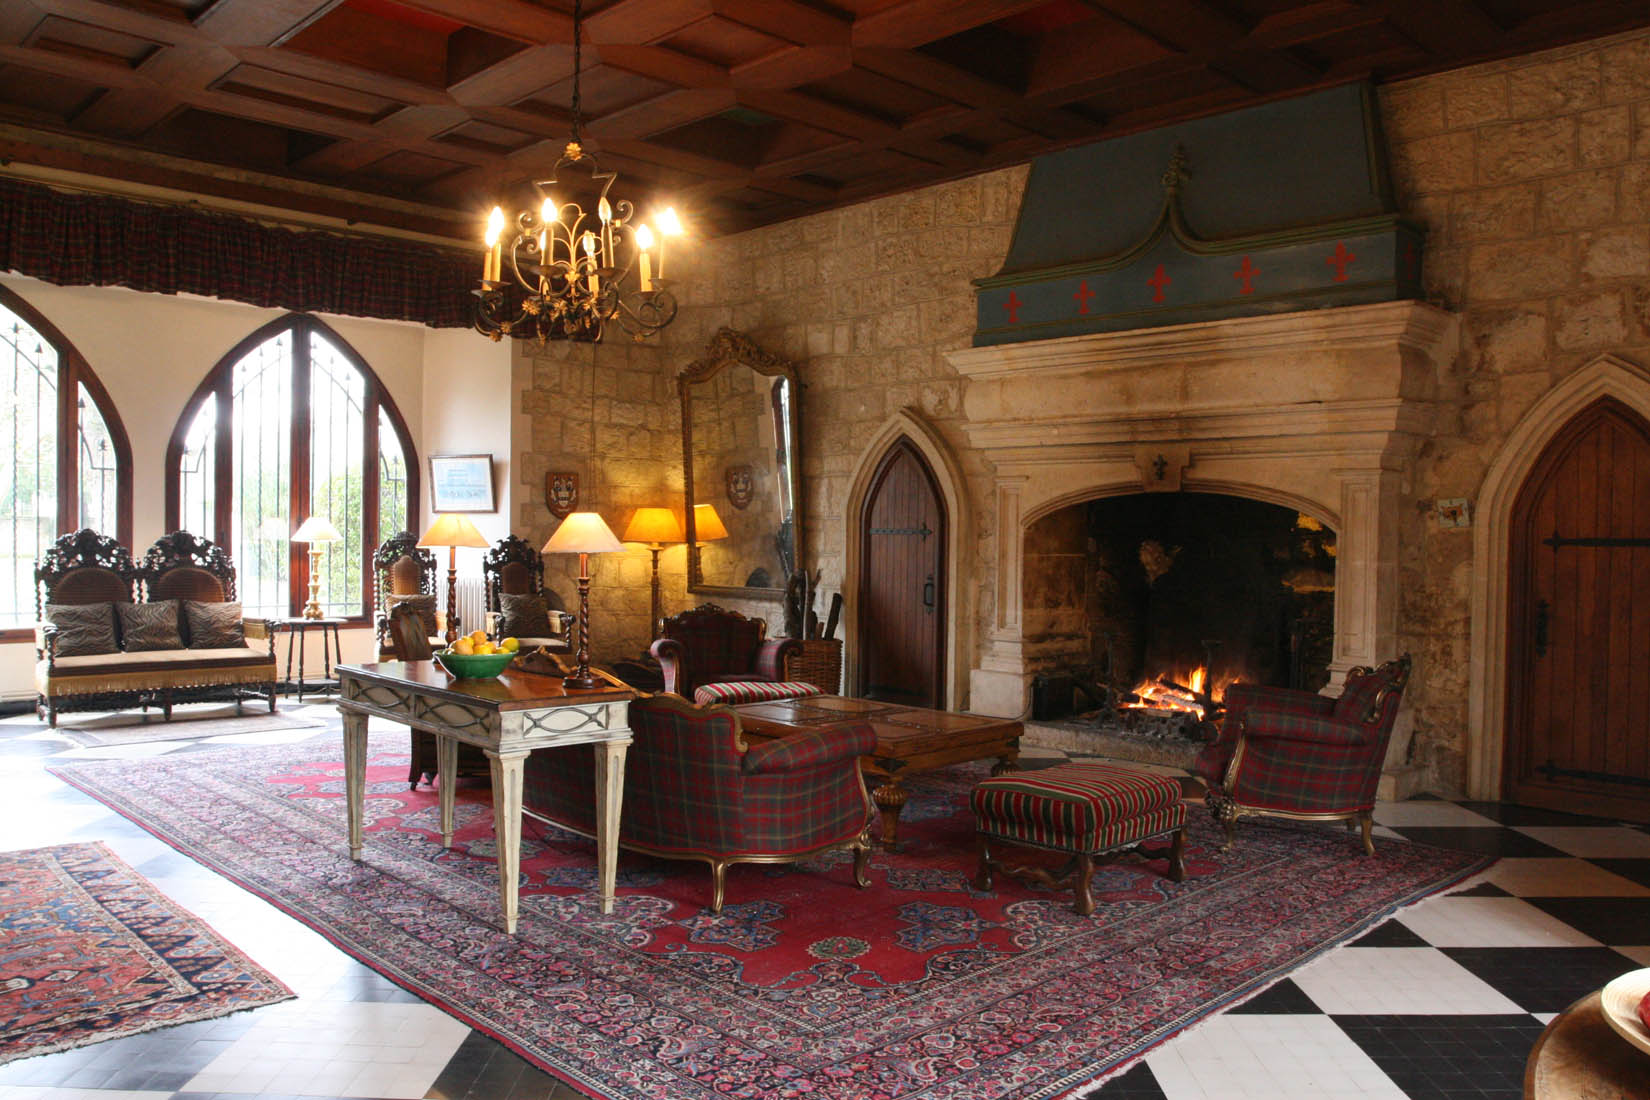 Zone de repos devant la cheminée dans le salon dans le style du château